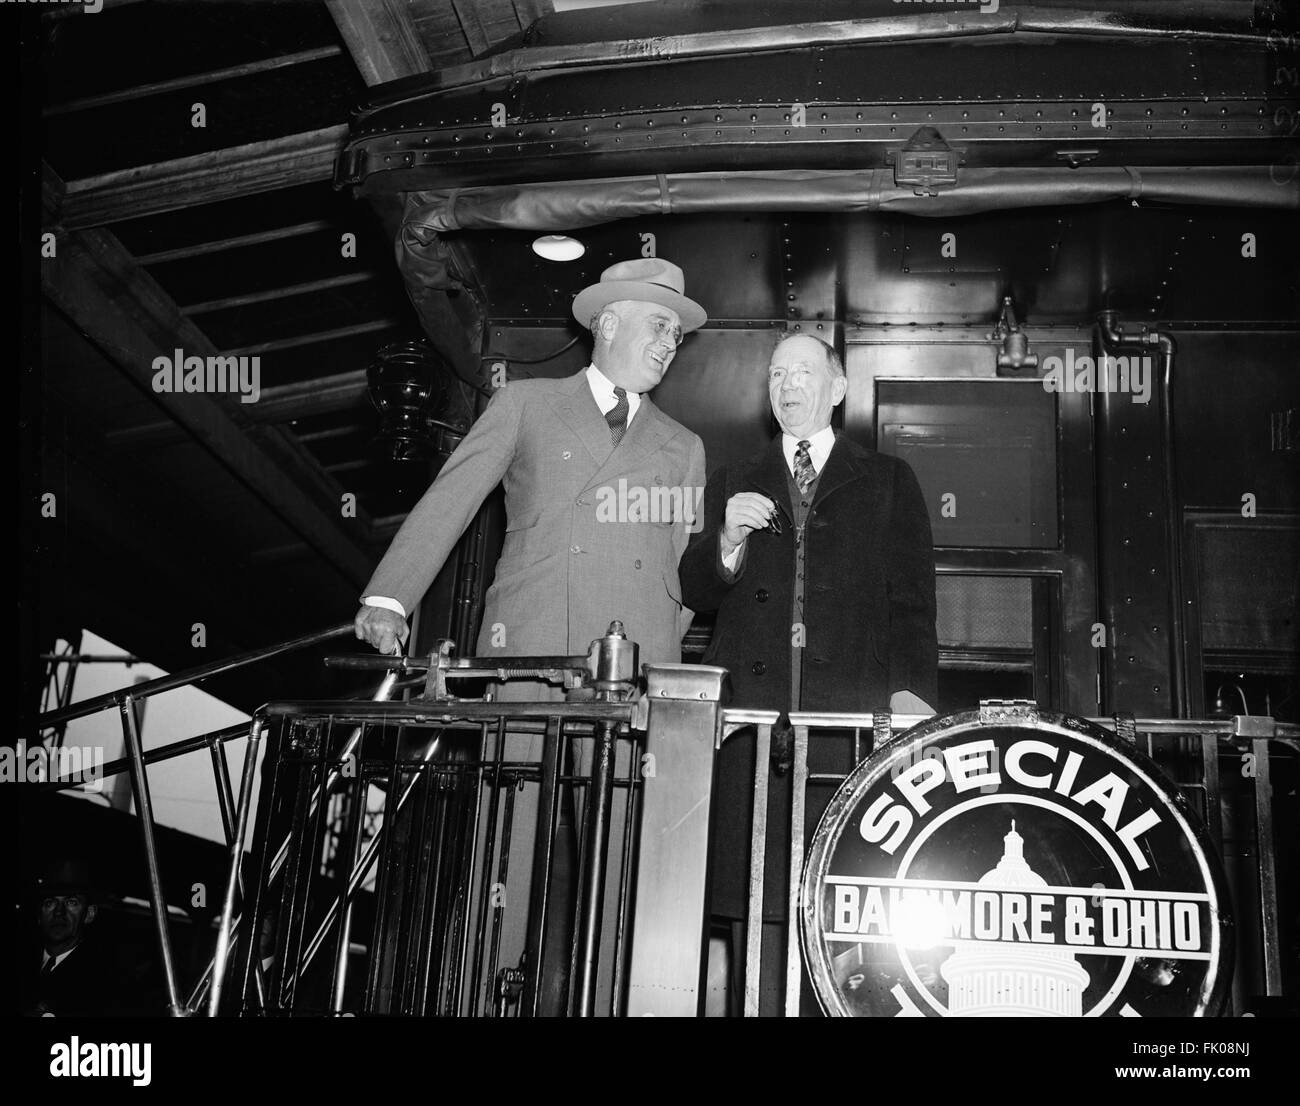 STATI UNITI Presidente Franklin Roosevelt prima del suo discorso alla Convenzione dell'American Bankers Association, Harris & Ewing, Washington, D.C., USA, Ottobre 24, 1934 Foto Stock